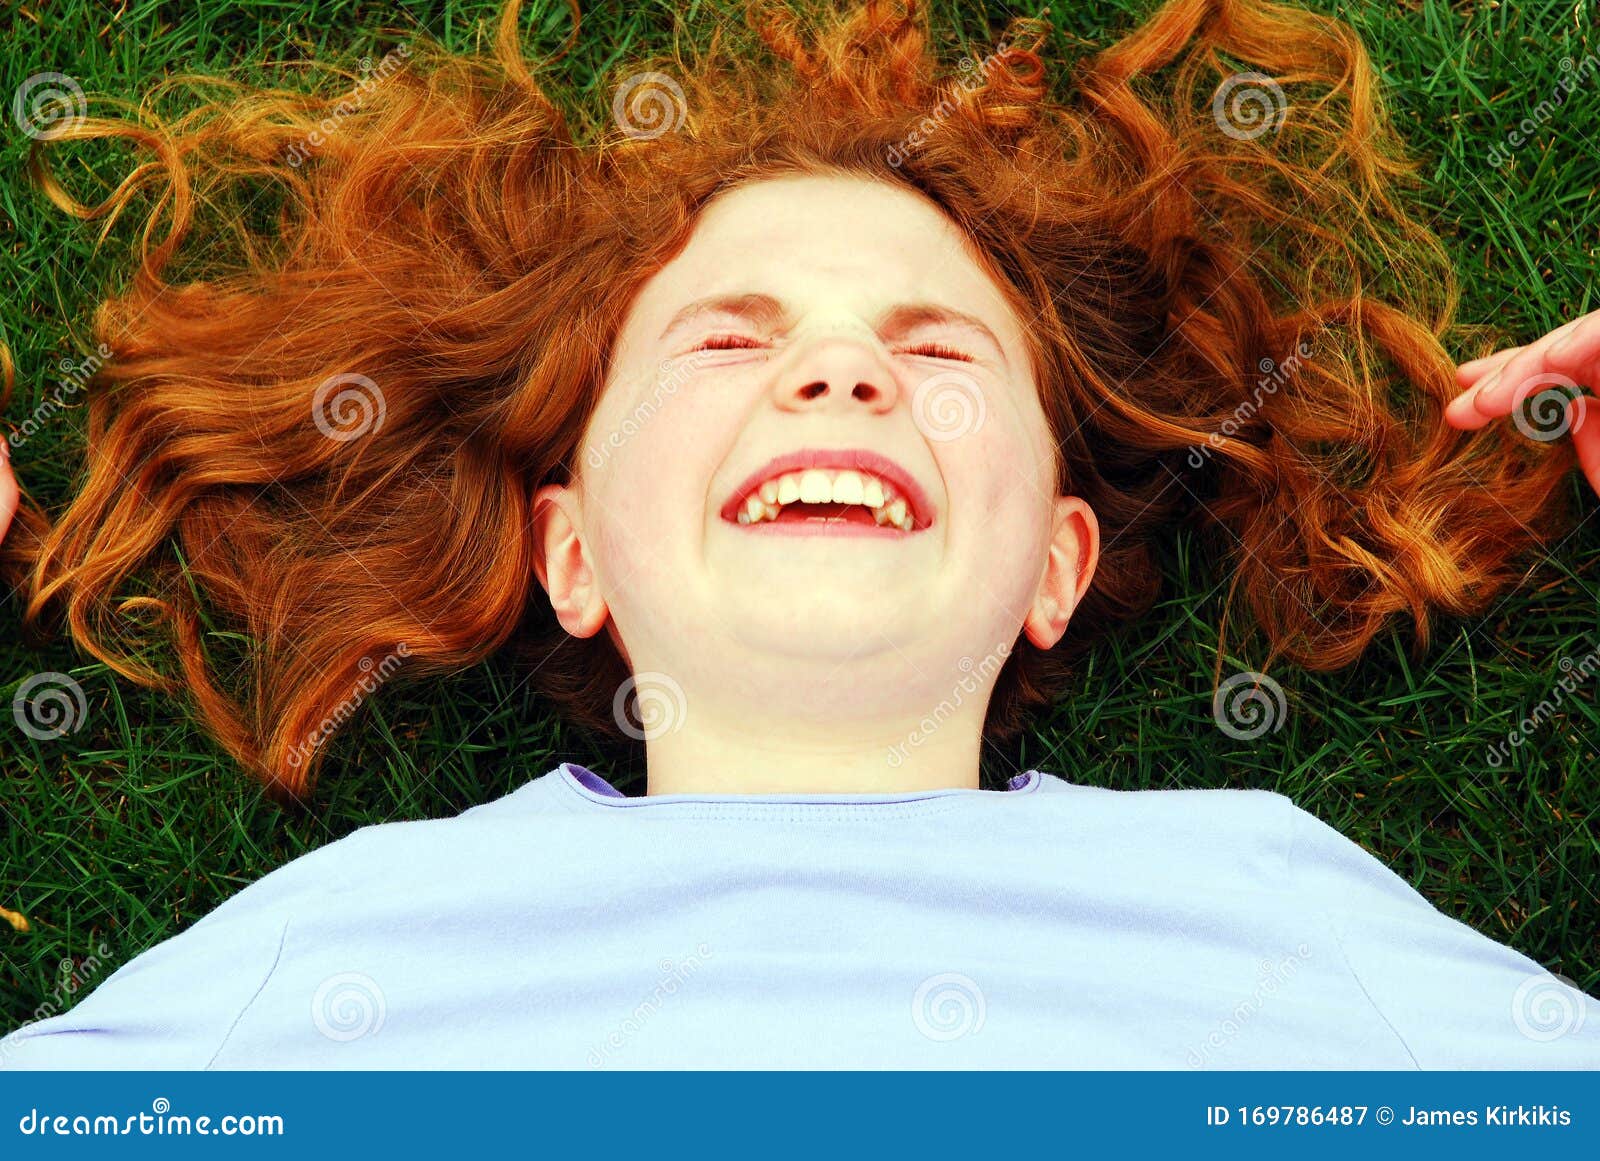 躺着的开心的人背景图片_躺着的开心的人背景素材图片_千库网